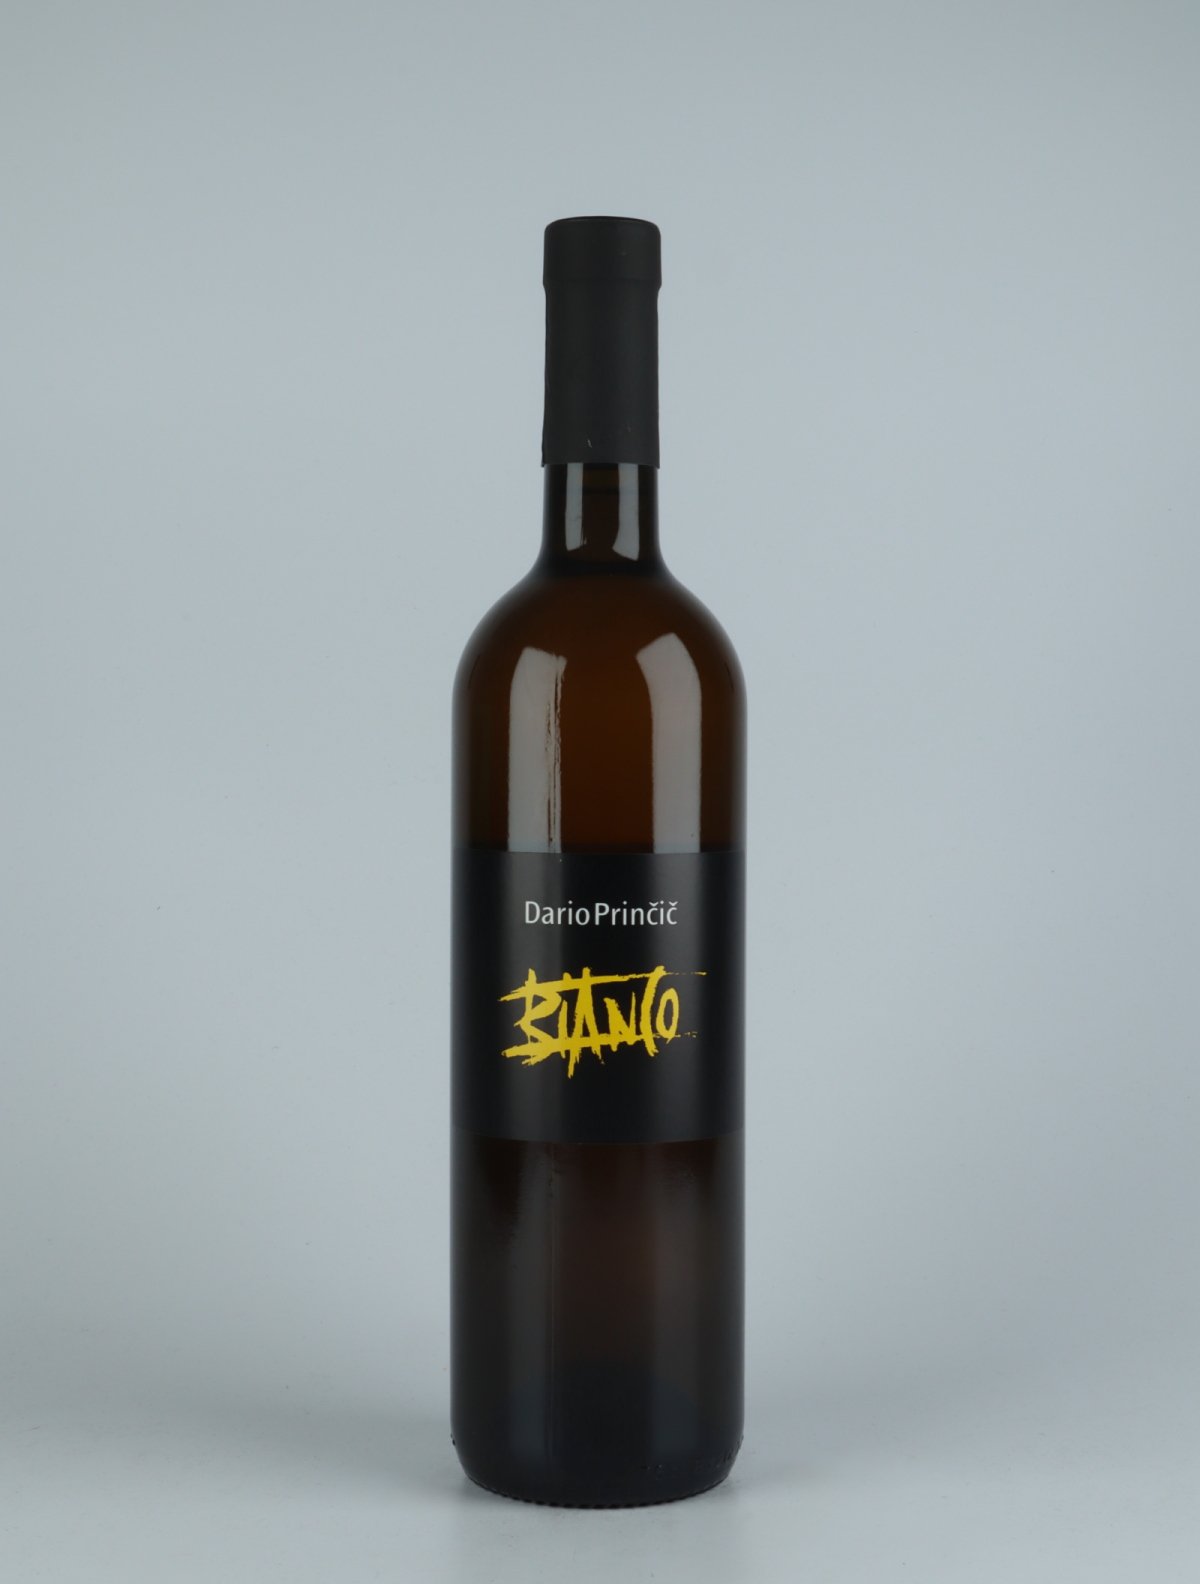 En flaske 2019 Bianco Orange vin fra Dario Princic, Friuli i Italien